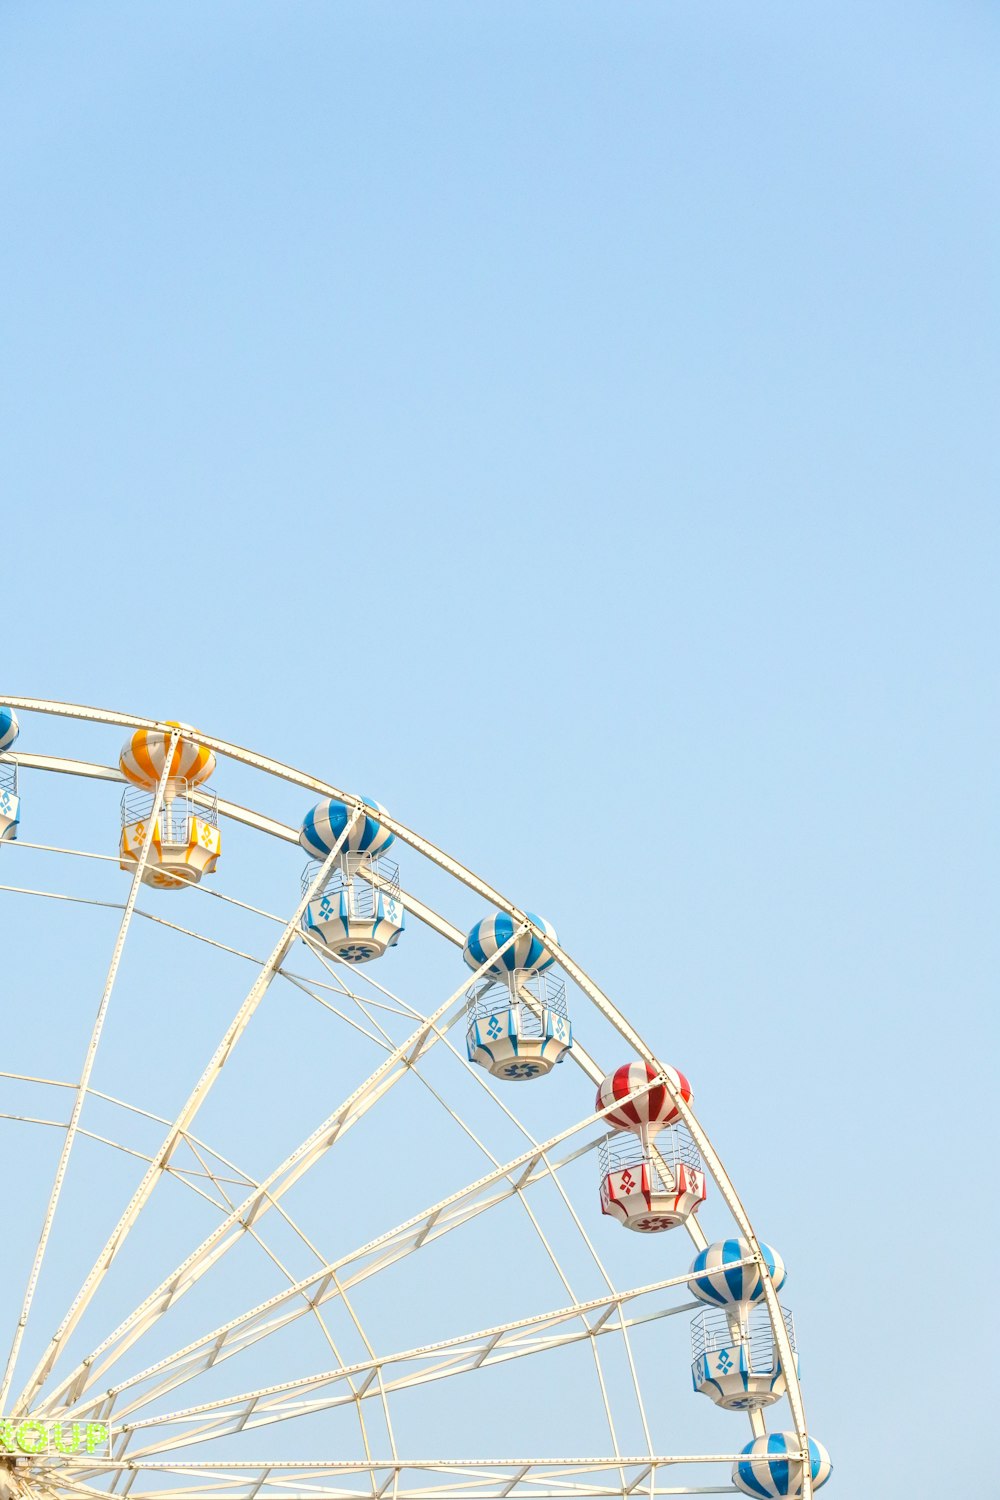 worm's eye view of Ferris Wheel under clear blue sky